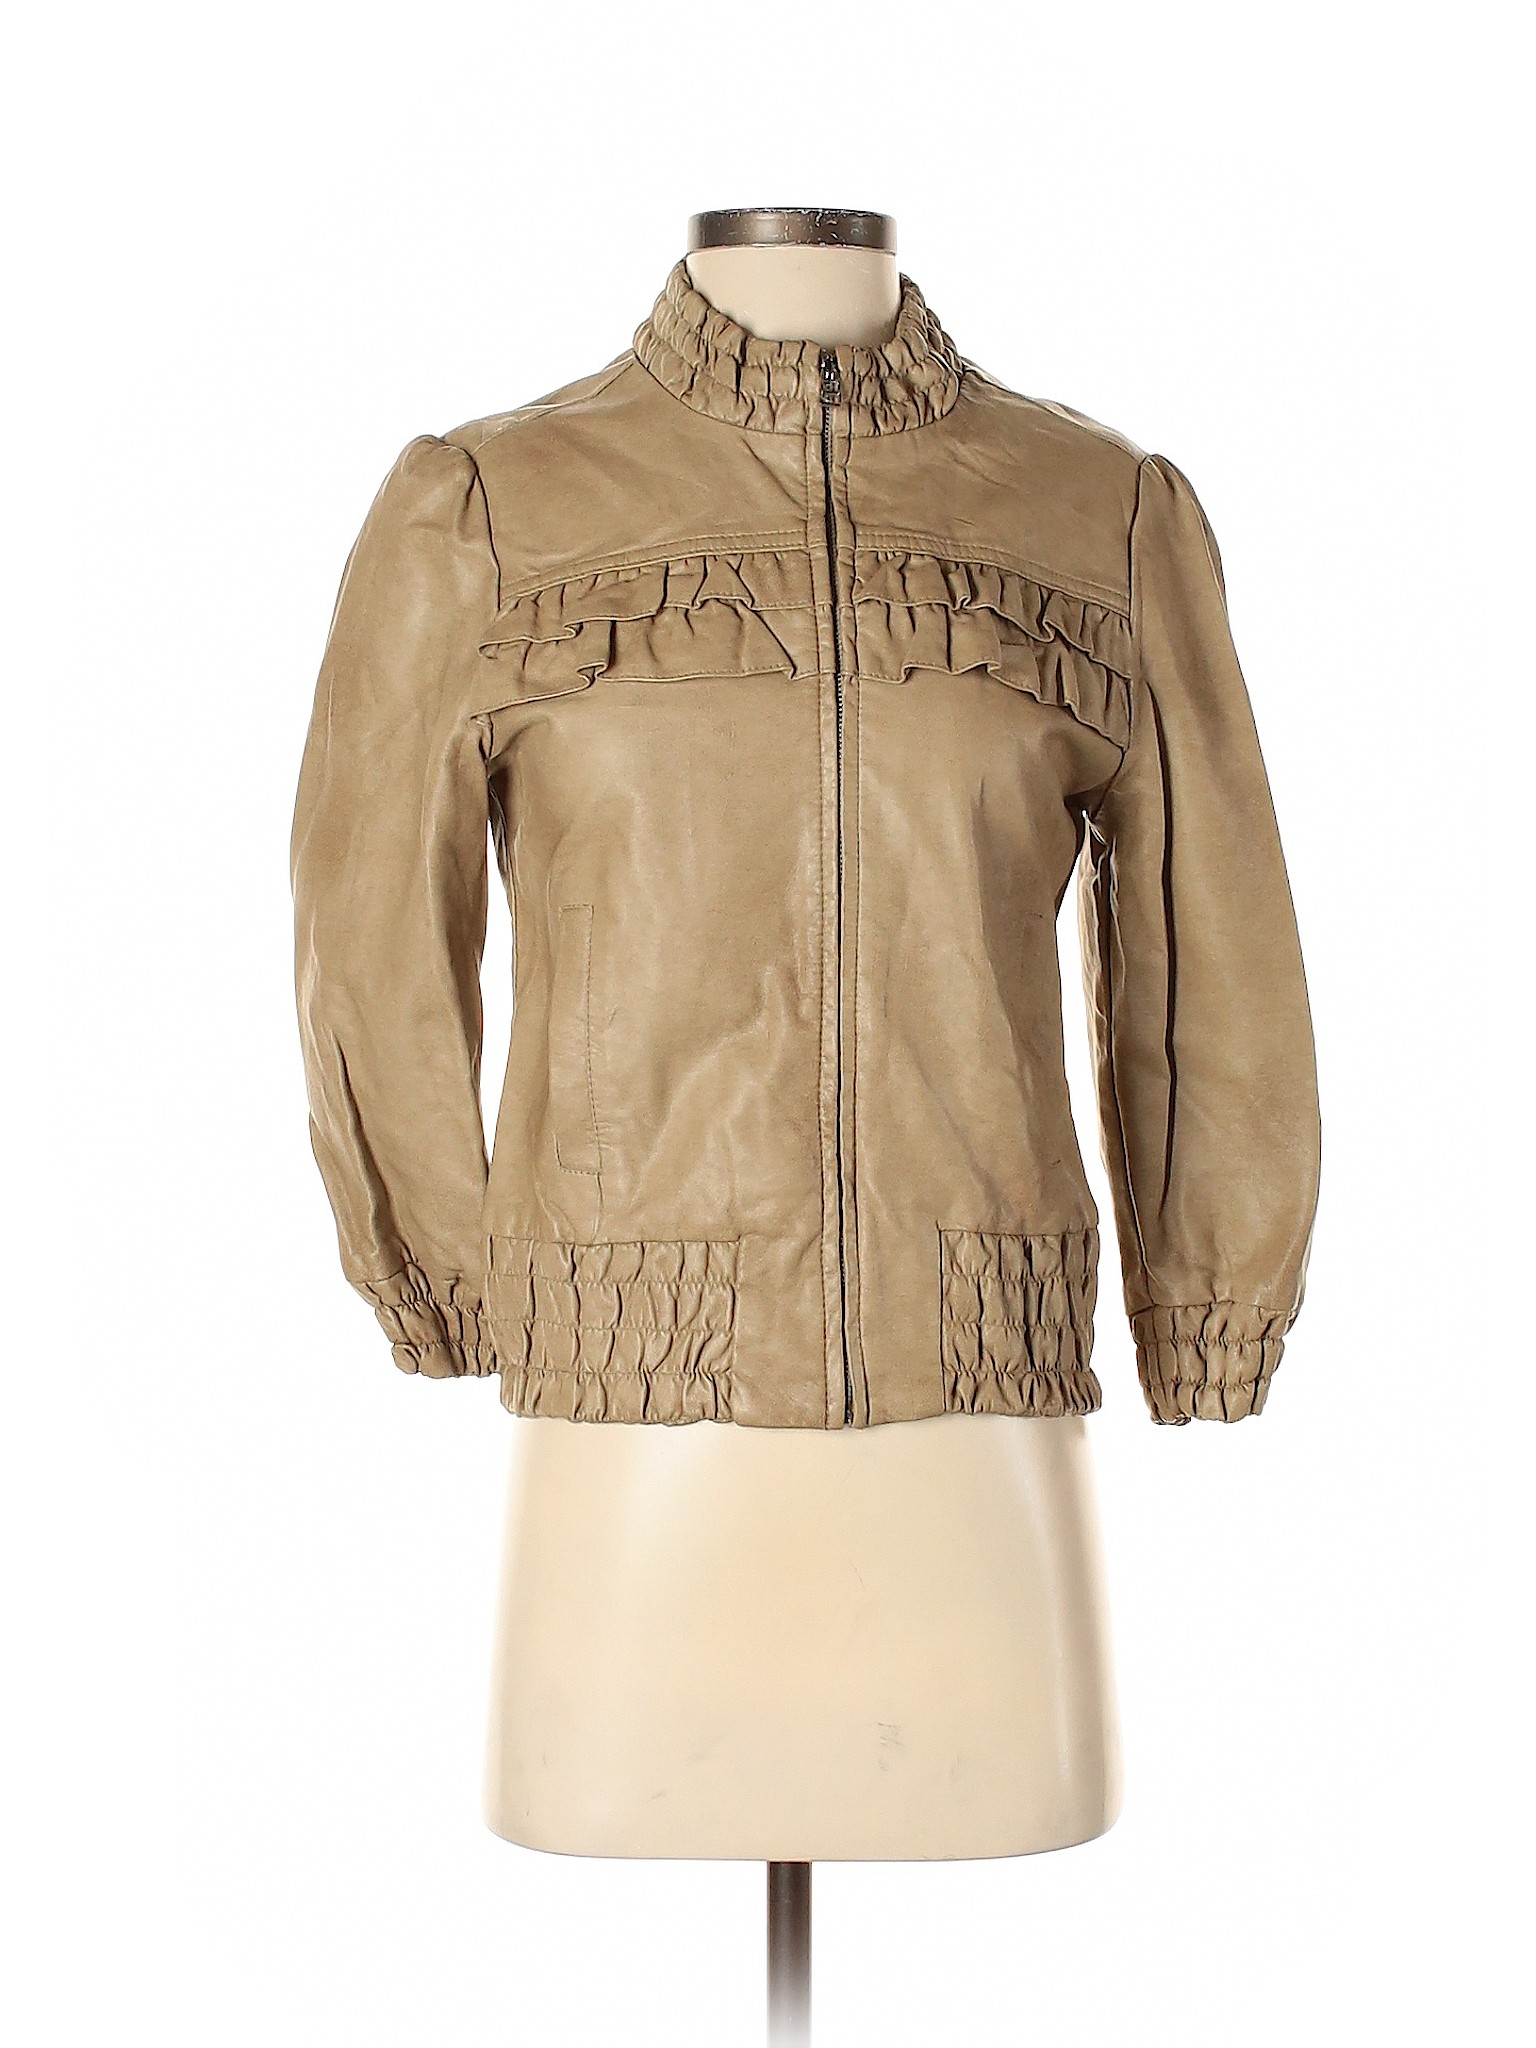 Tryst Women Brown Jacket S | eBay